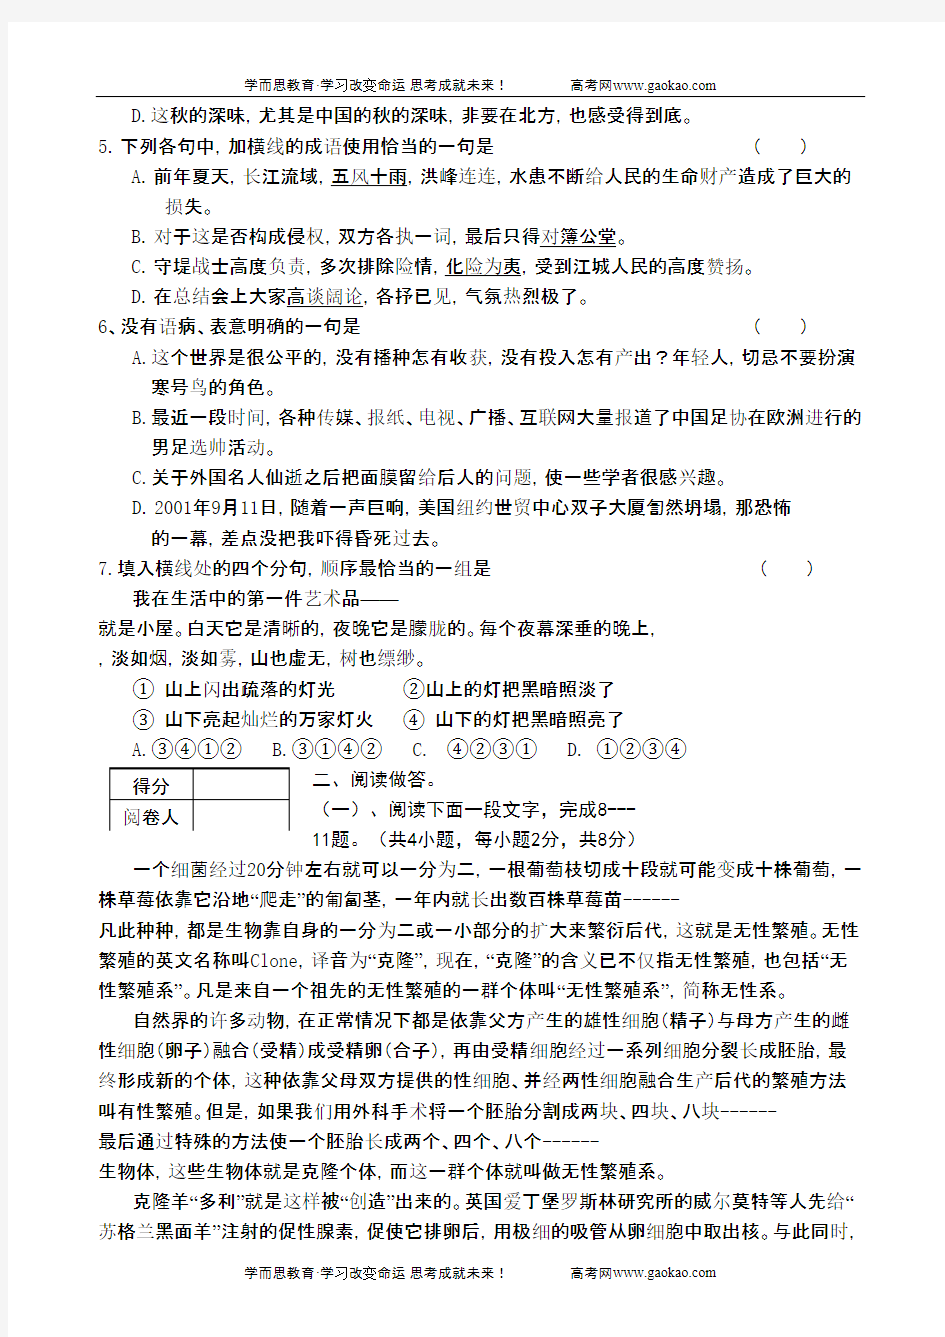 高二语文试卷天津一百中学年上学期高二语文期末考试